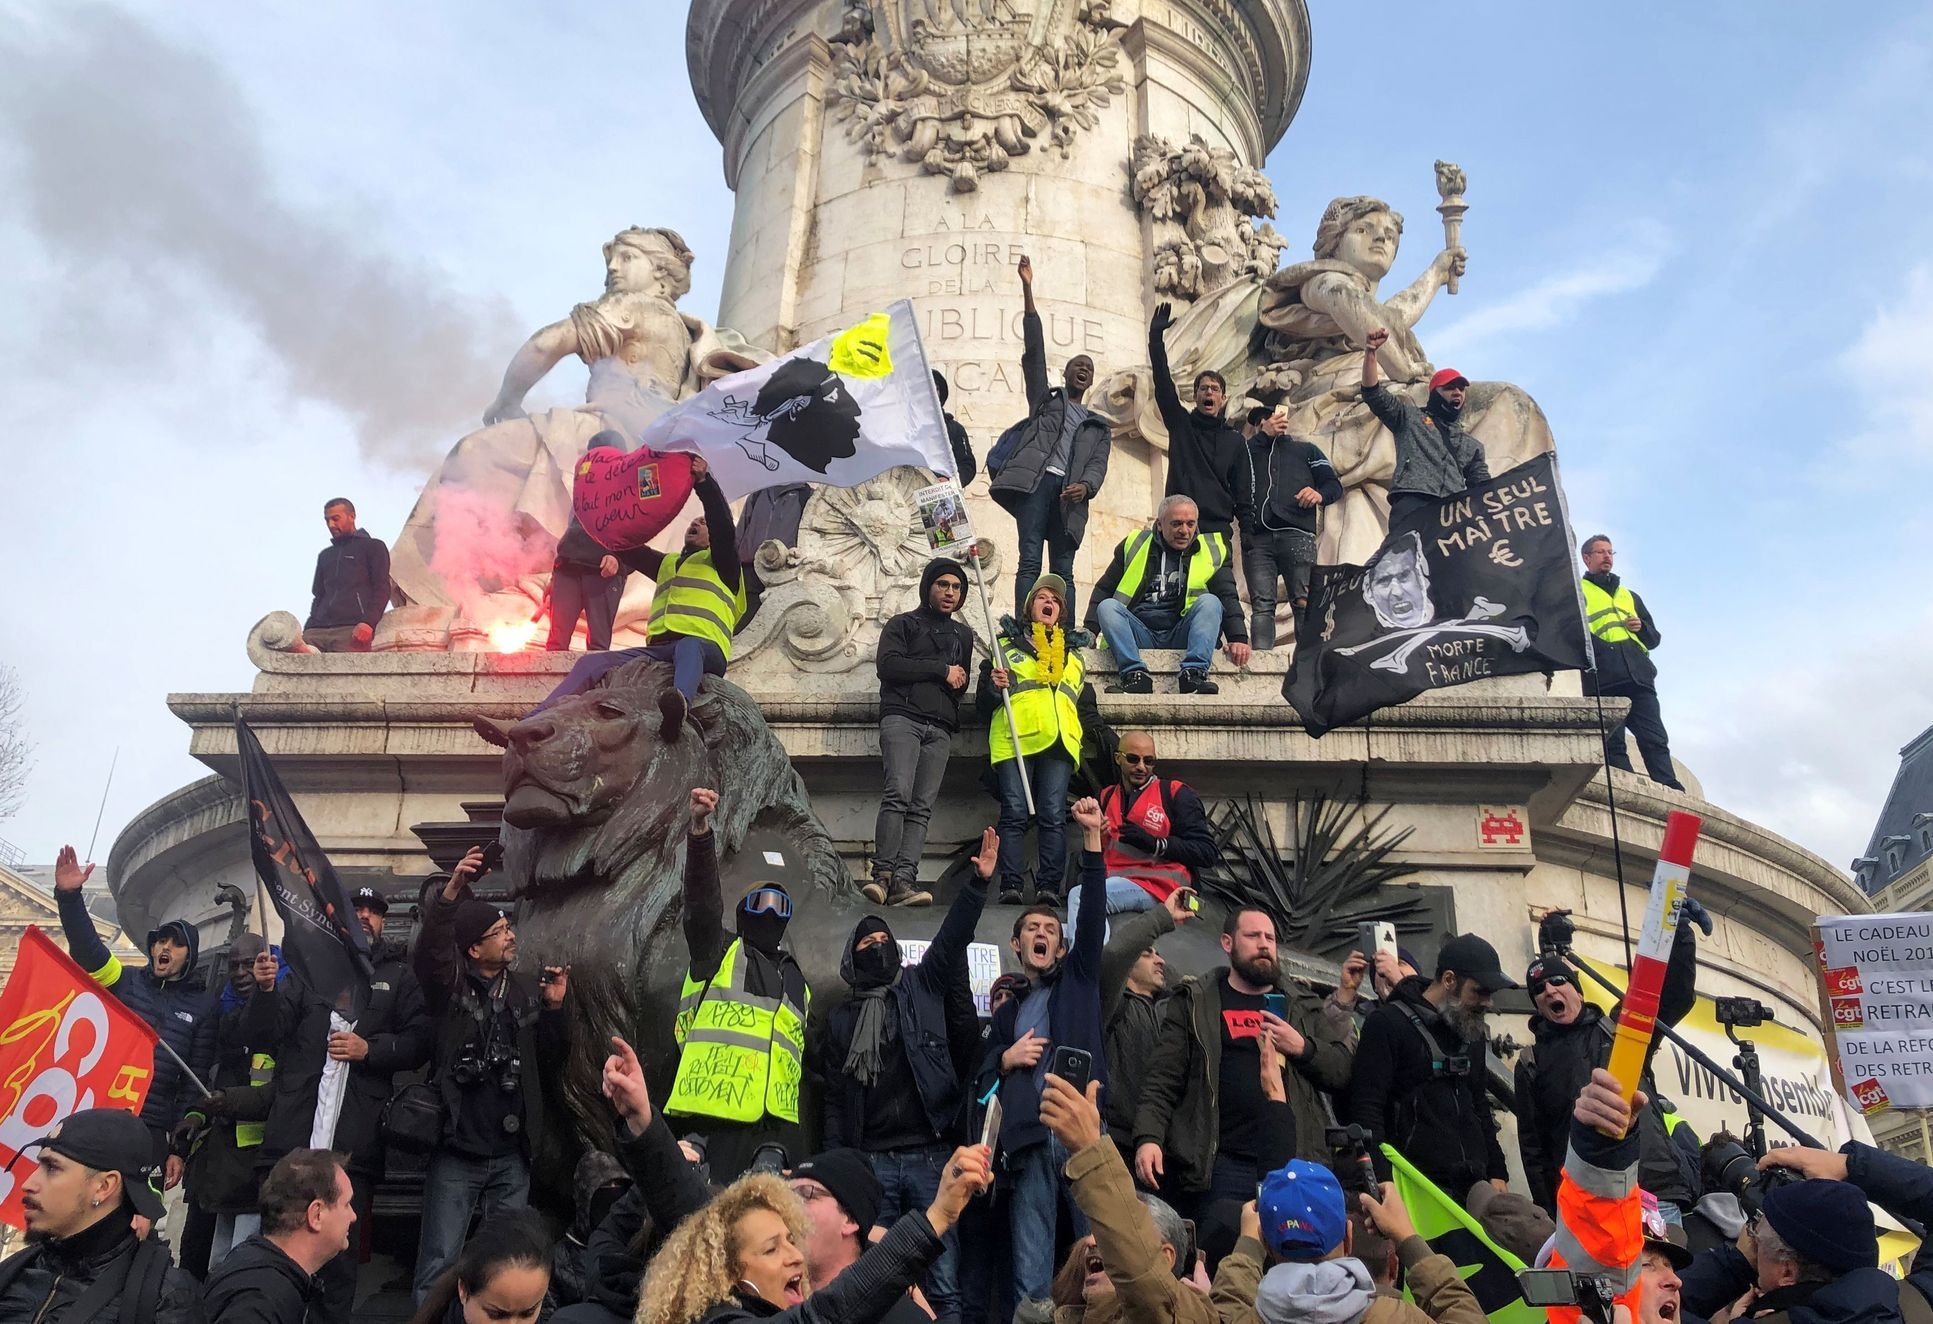 Odbory v Paříži protestují proti důchodové reformě